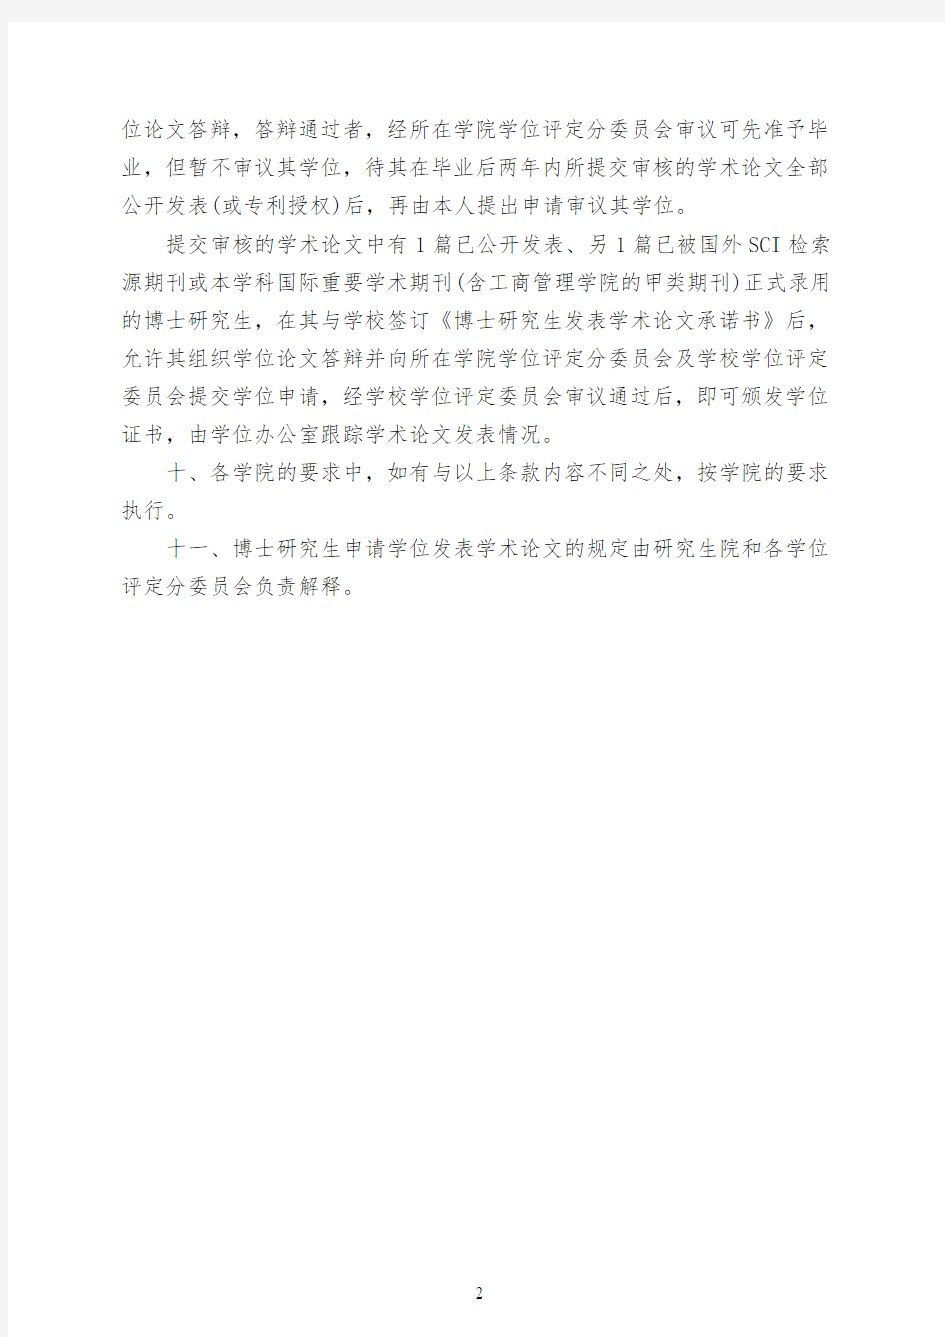 华南理工大学博士生申请学位发表学术论文的规定(2018.9.30更新)